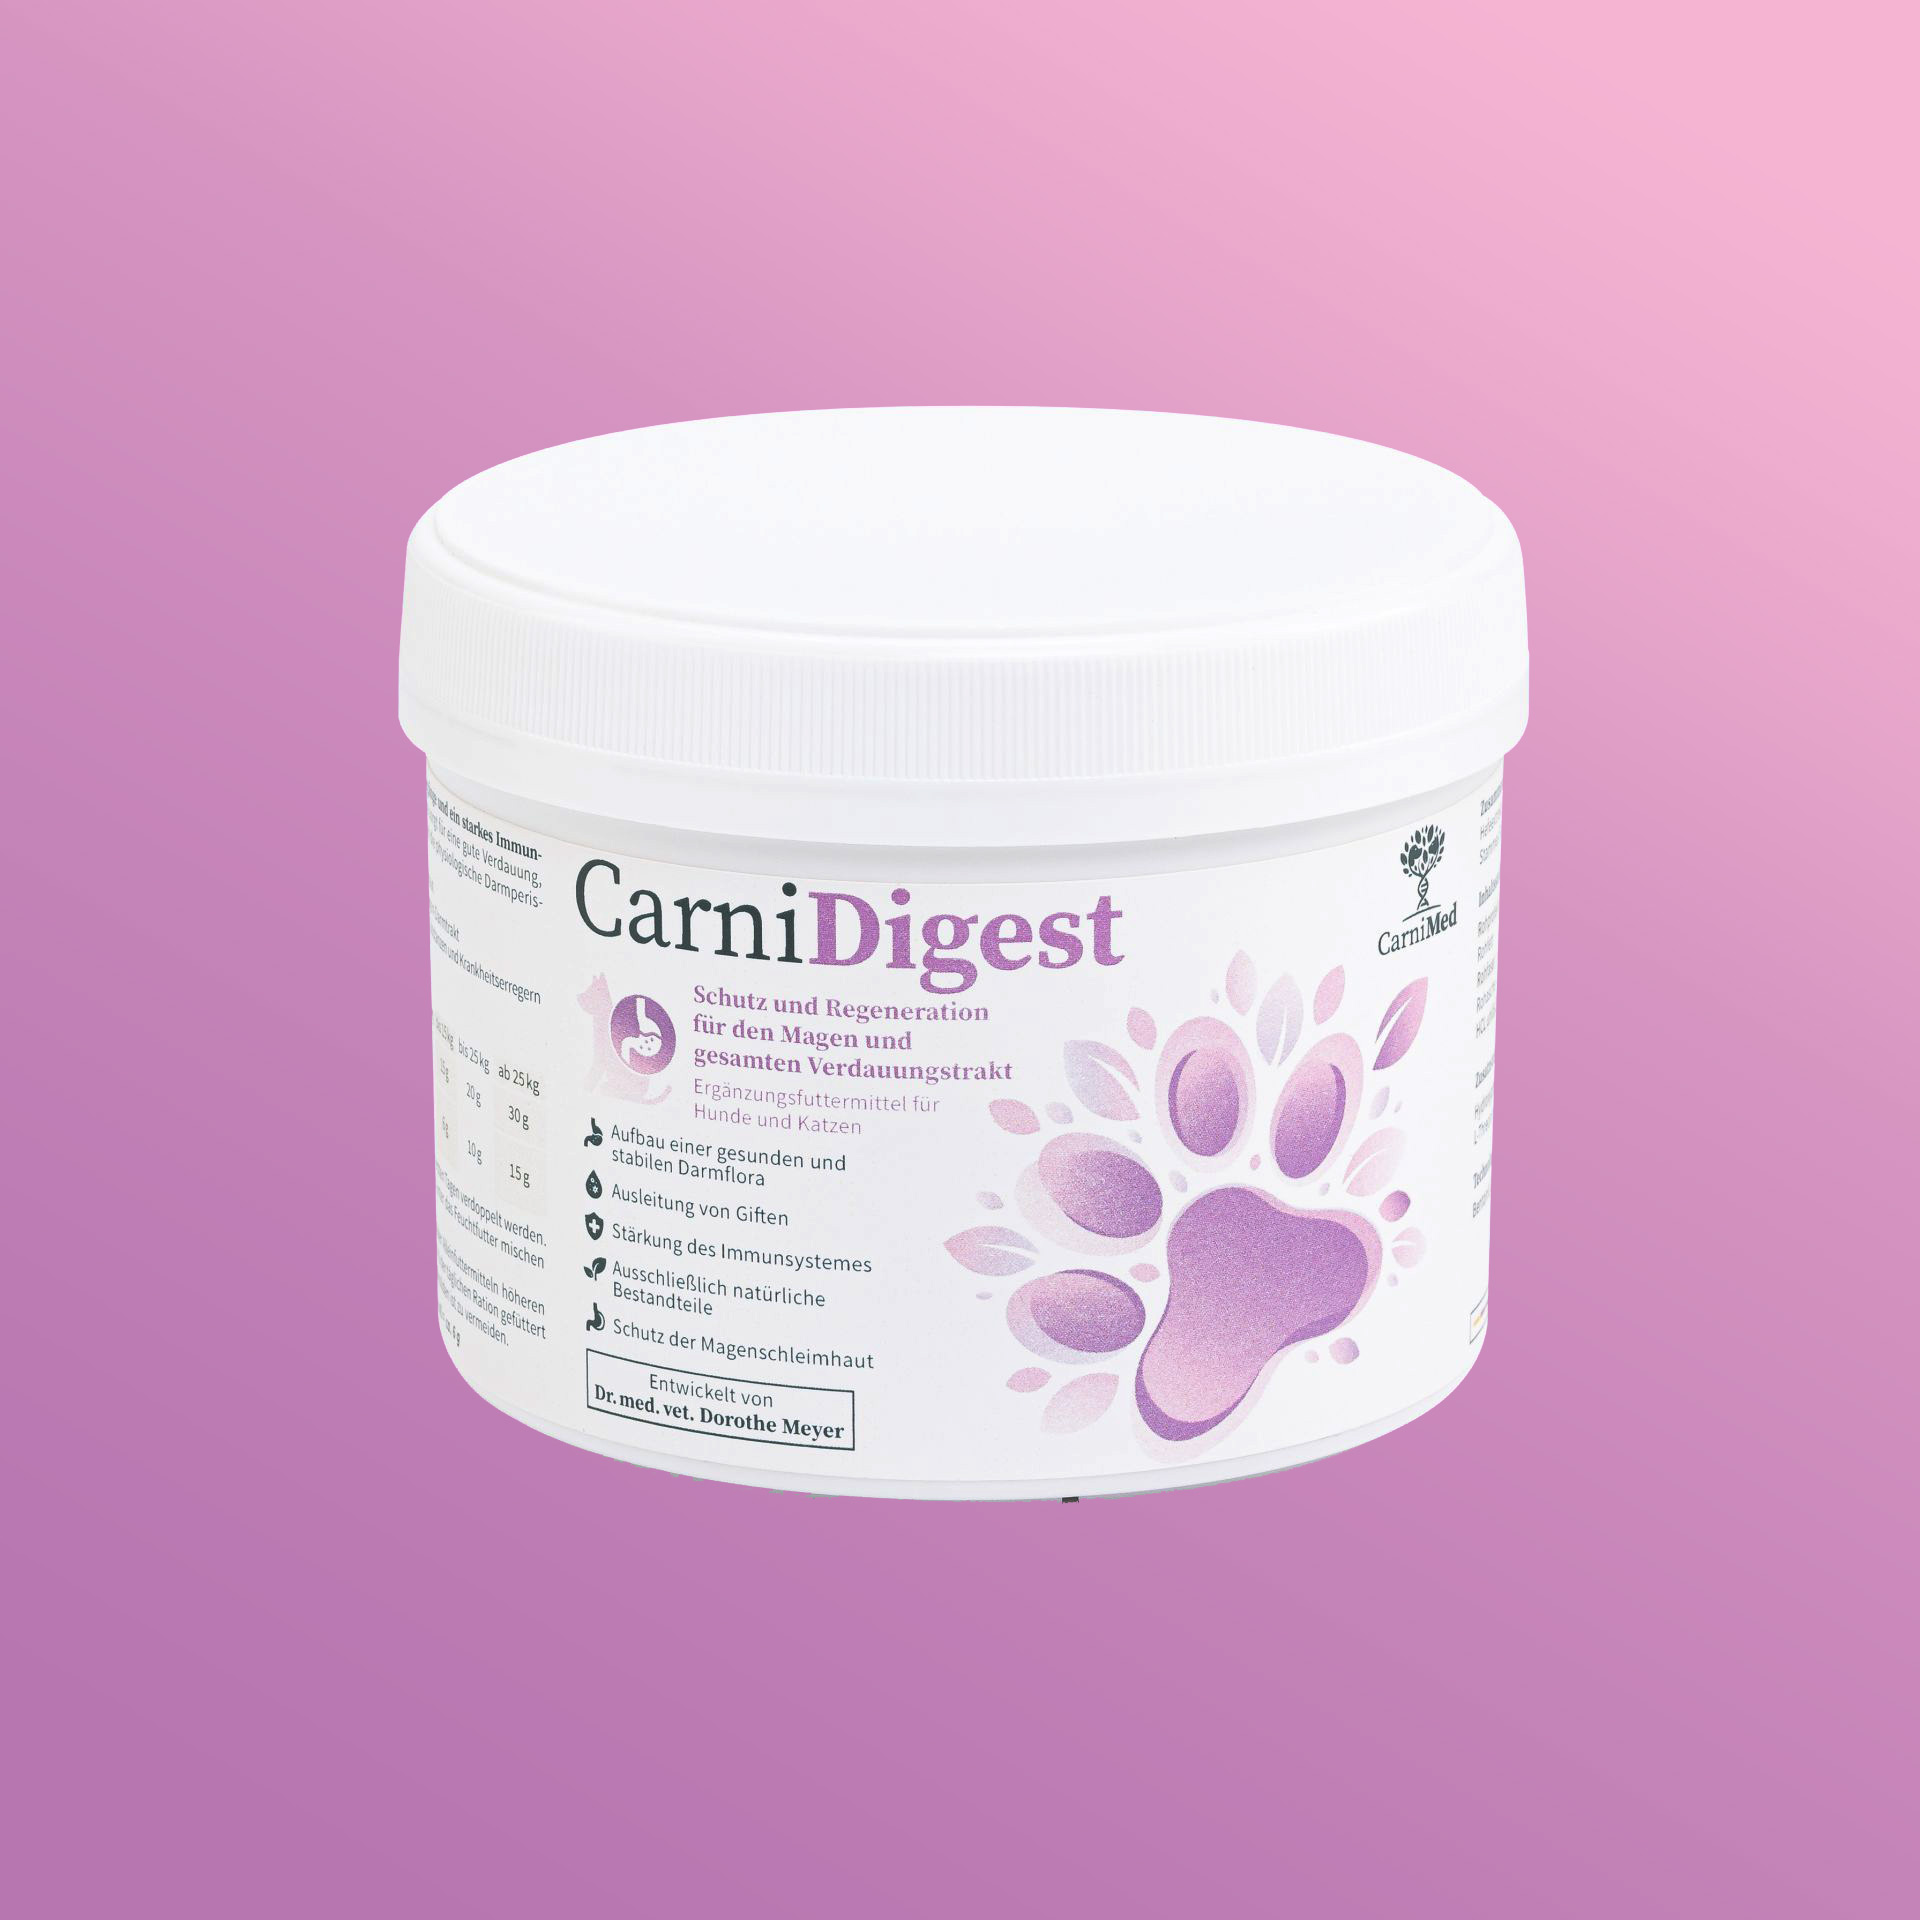    CarniDigest - schützt, regeneriert, entgiftet den Verdauungstrakt